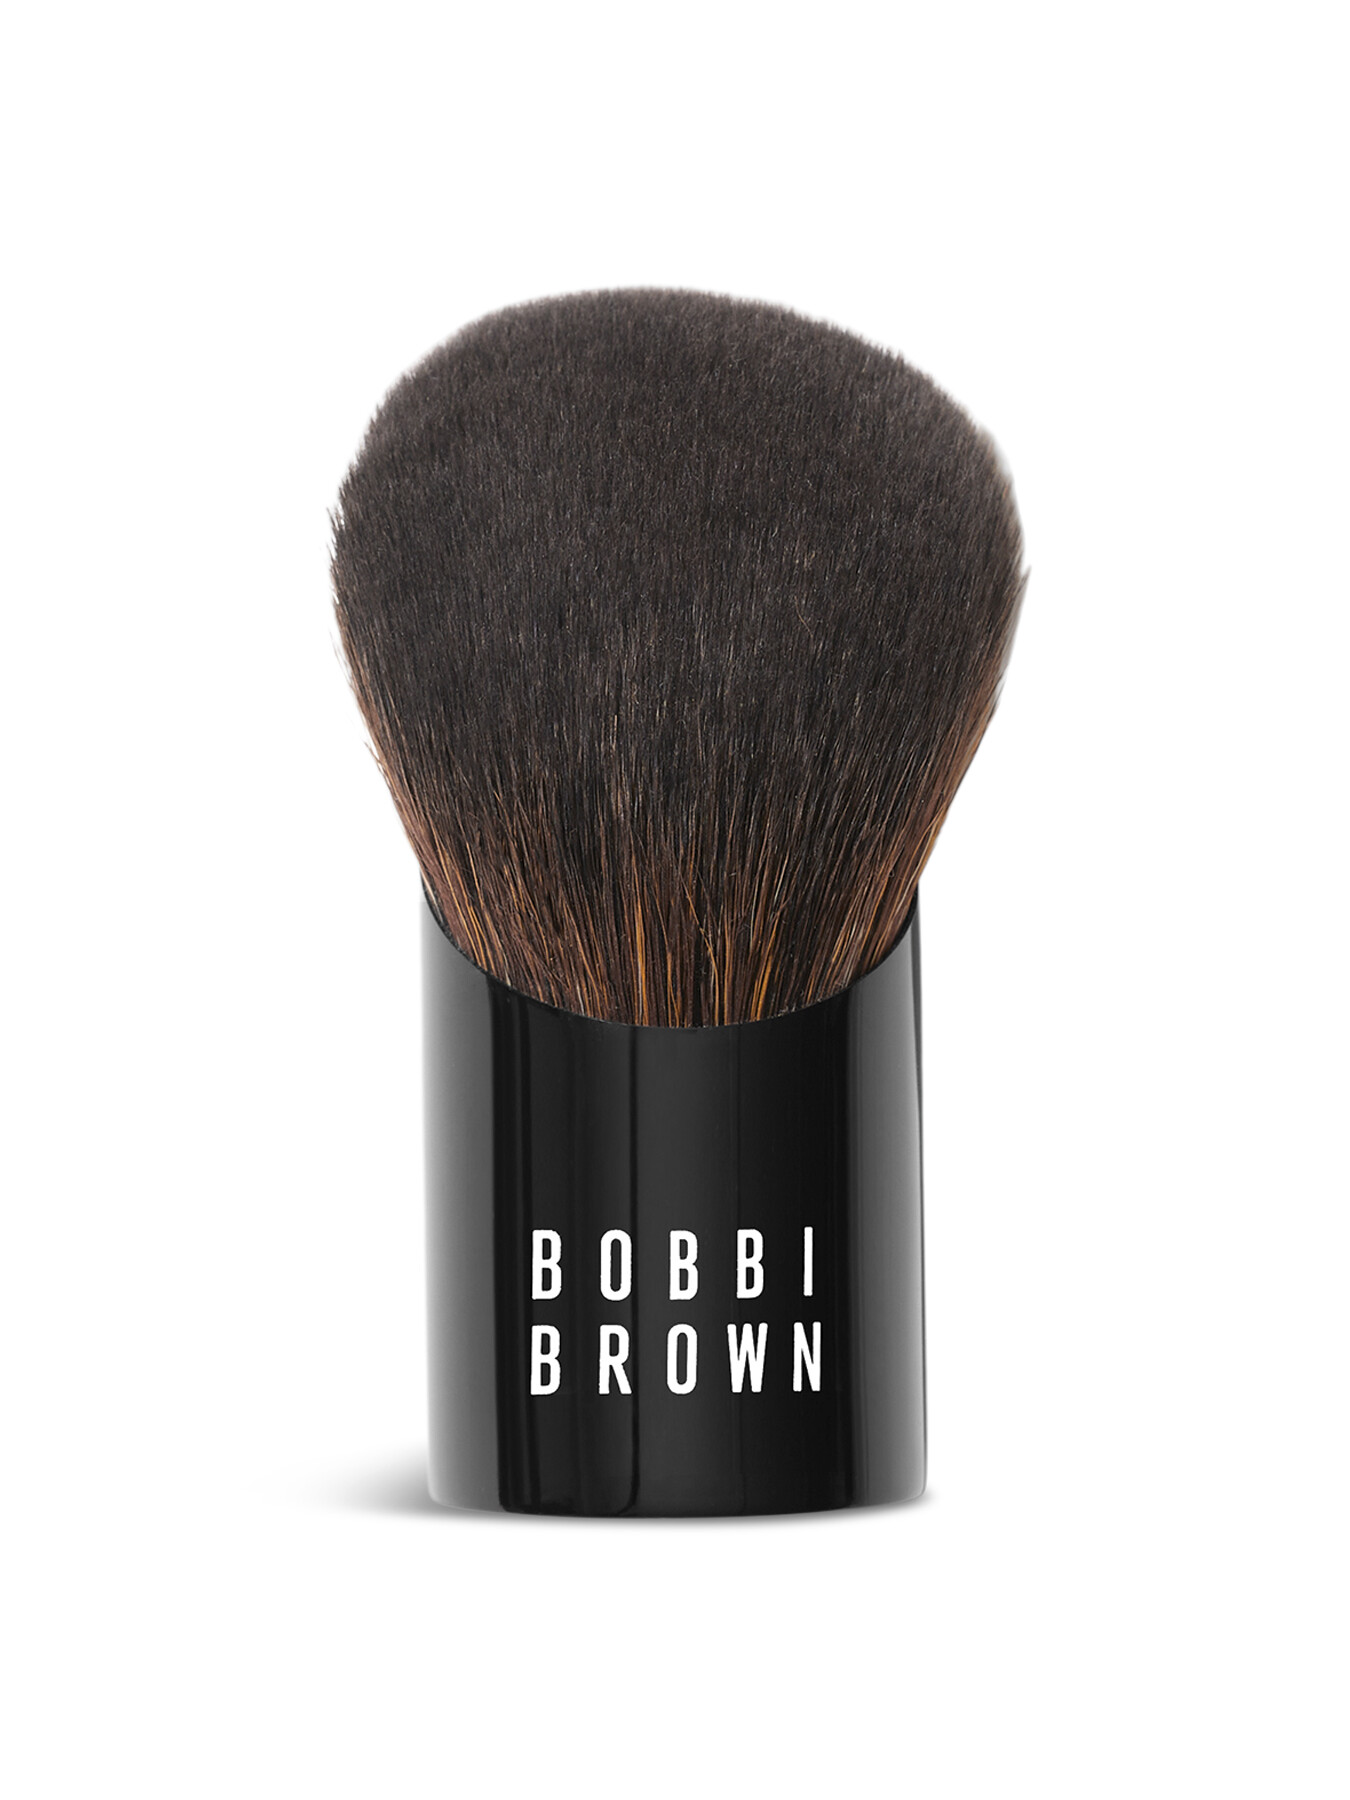 Bobbi Brown Smooth Blending Brush